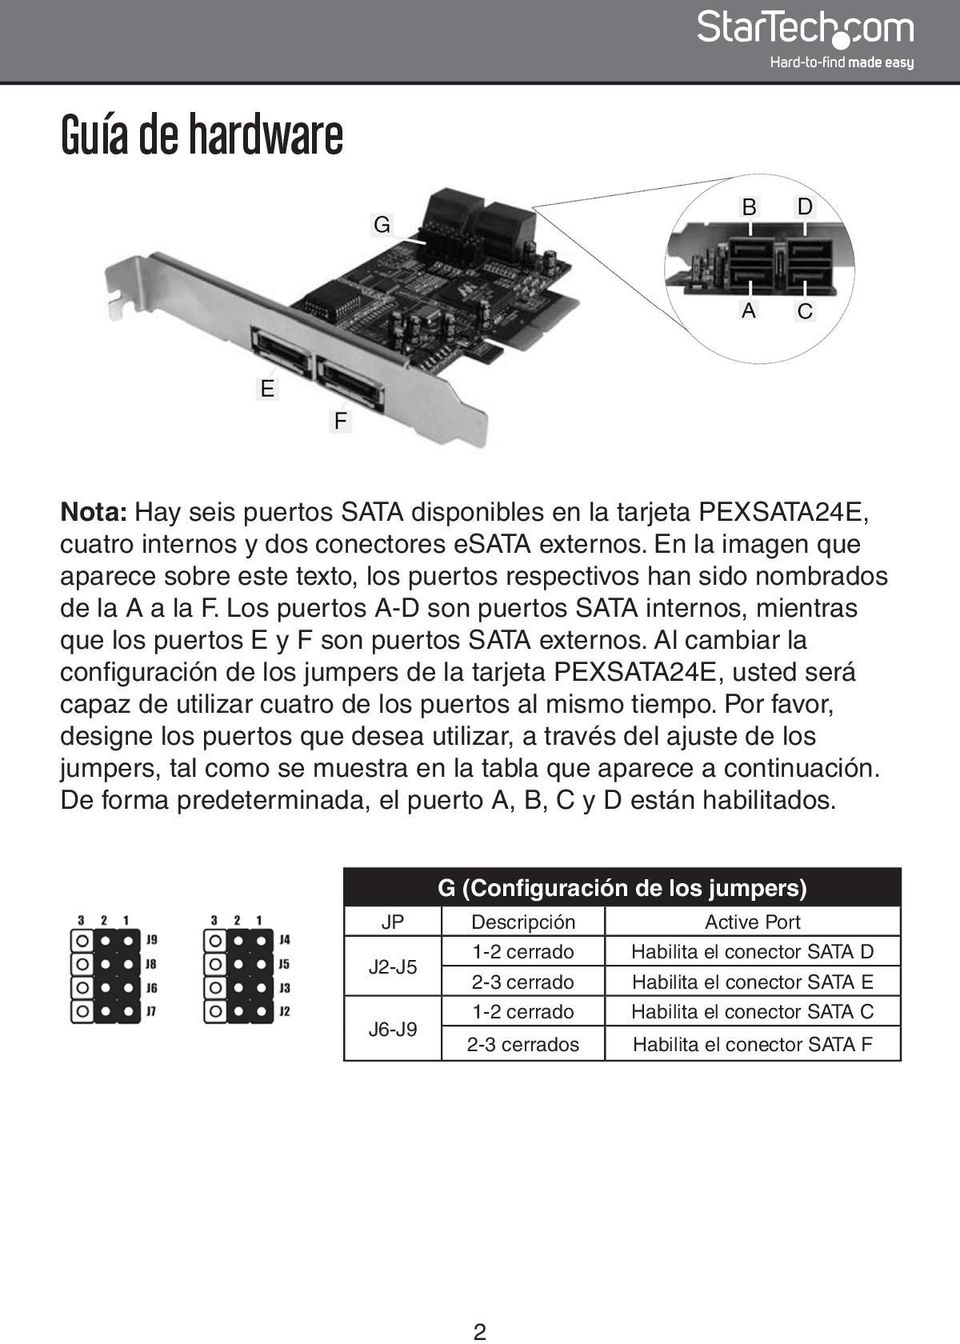 Los puertos A-D son puertos SATA internos, mientras que los puertos E y F son puertos SATA externos.